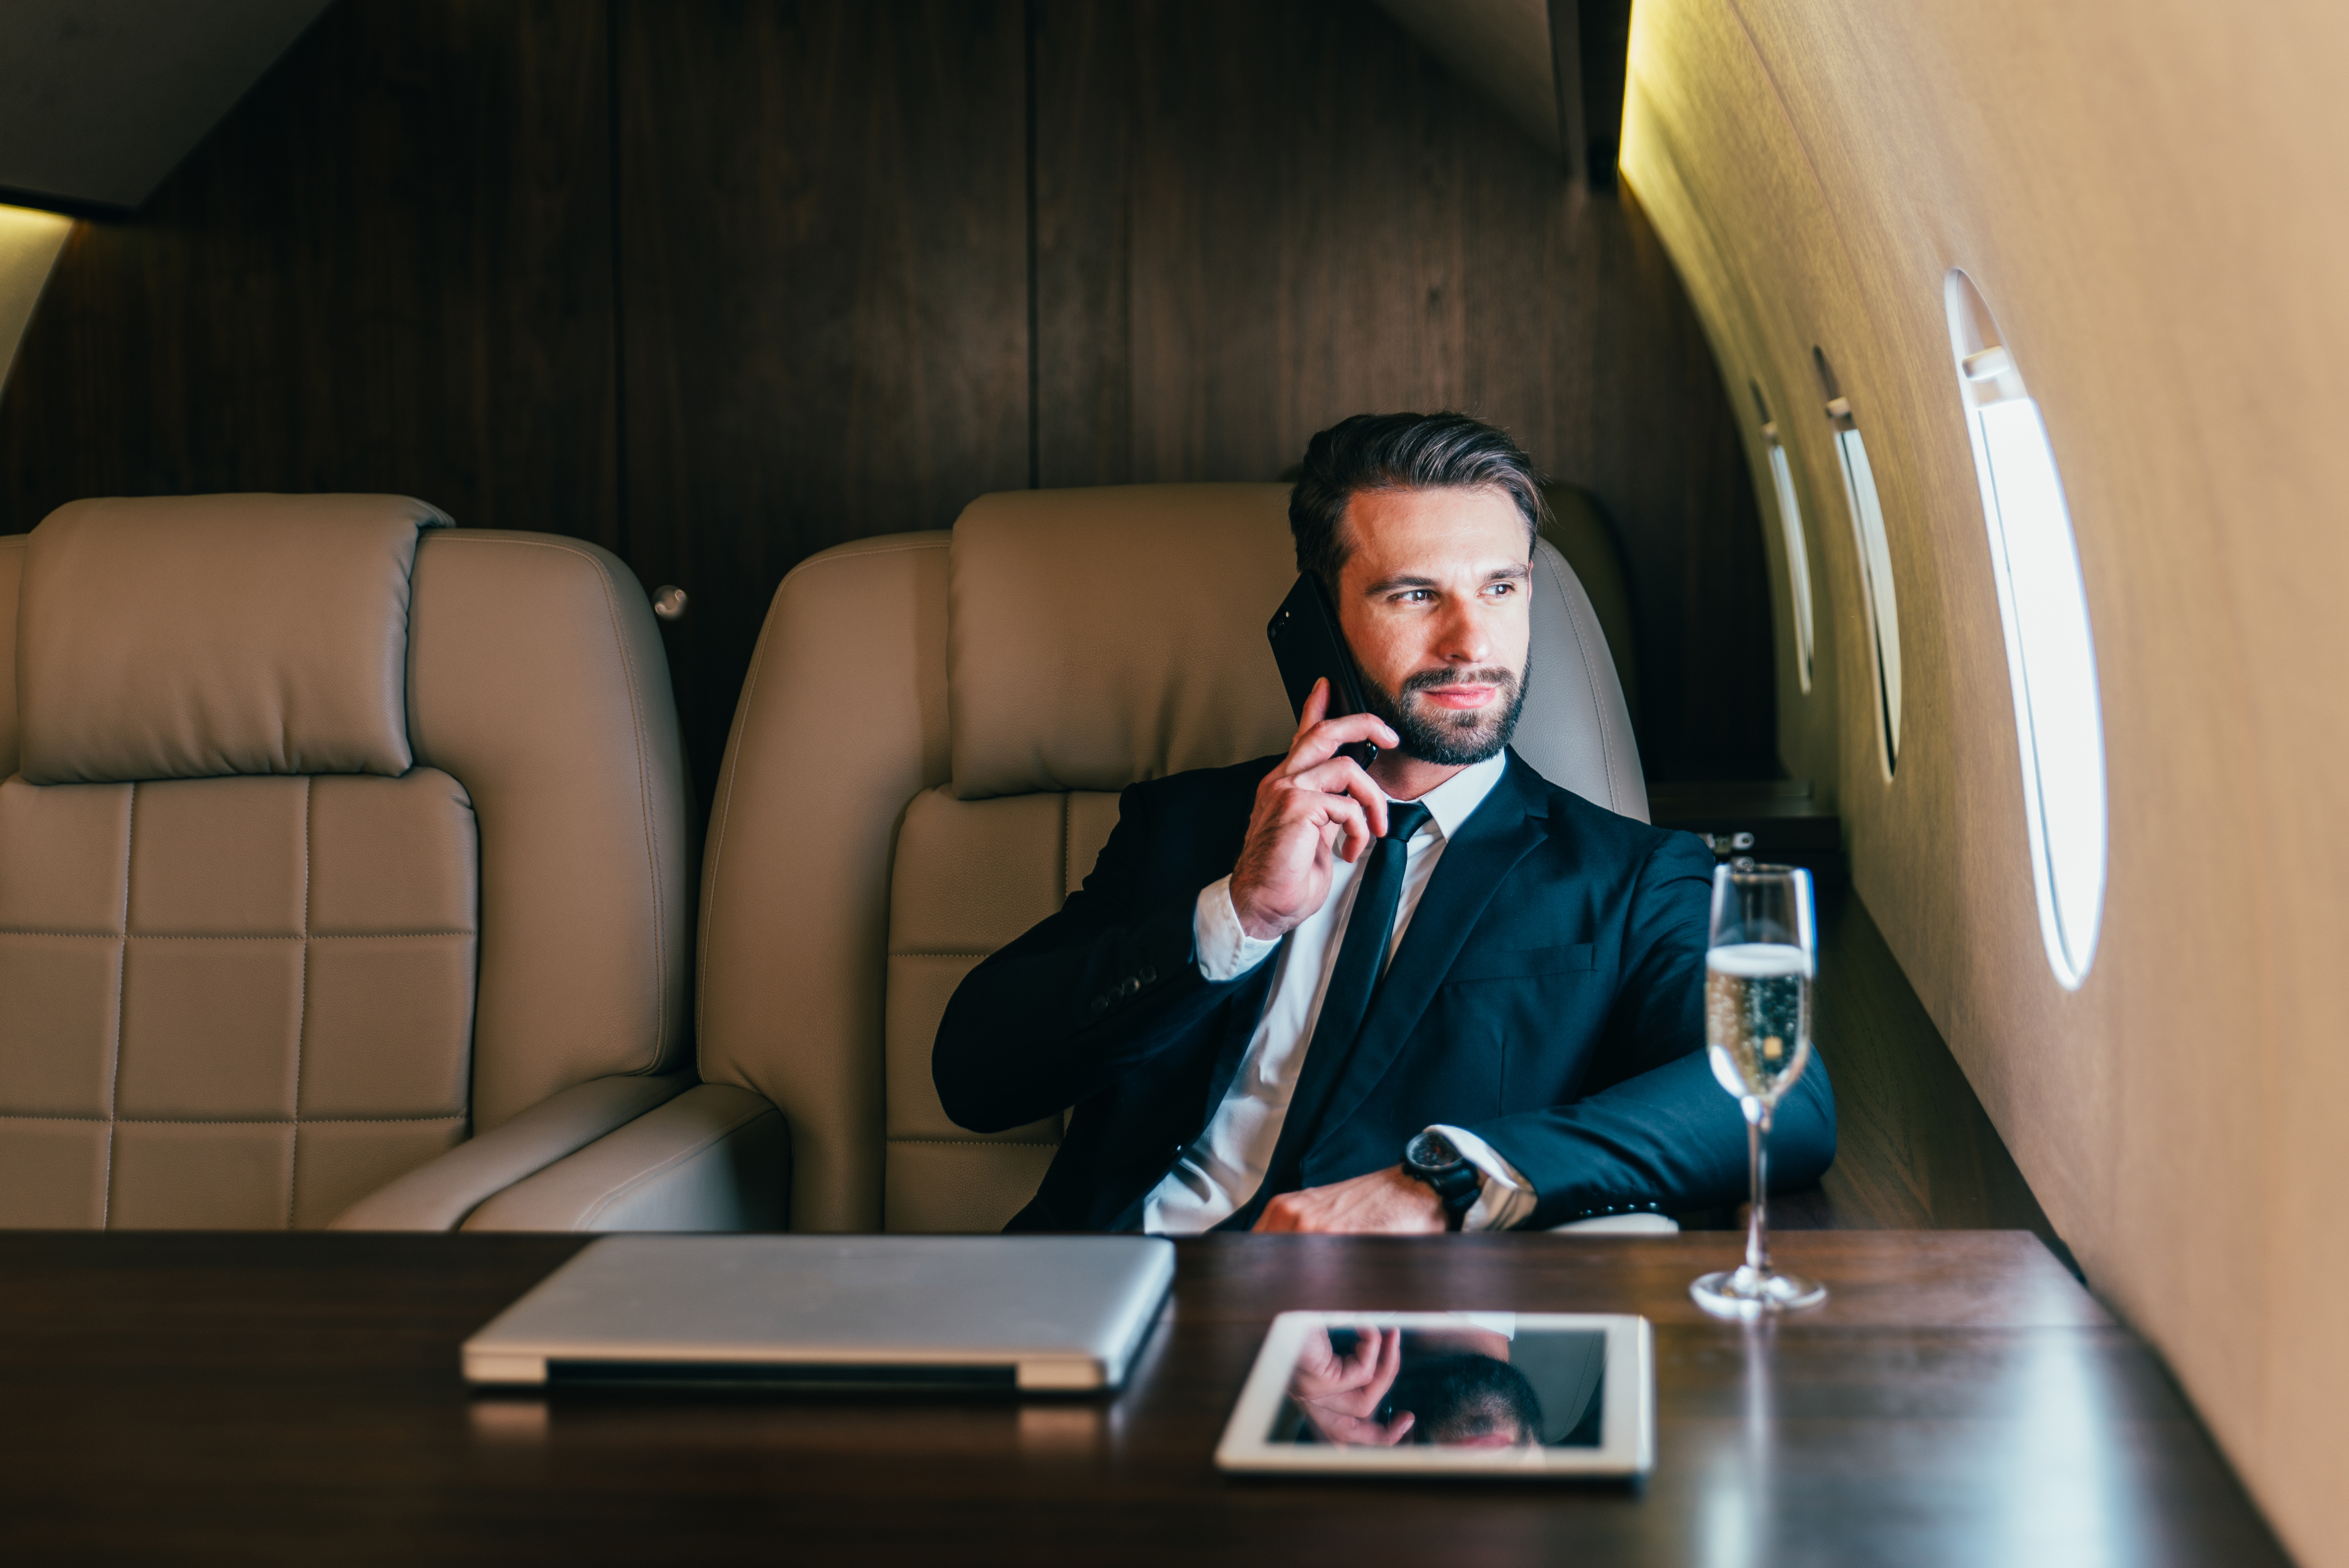 Geschäftsmann fliegt in seinem Privatjet | Quelle: Shutterstock